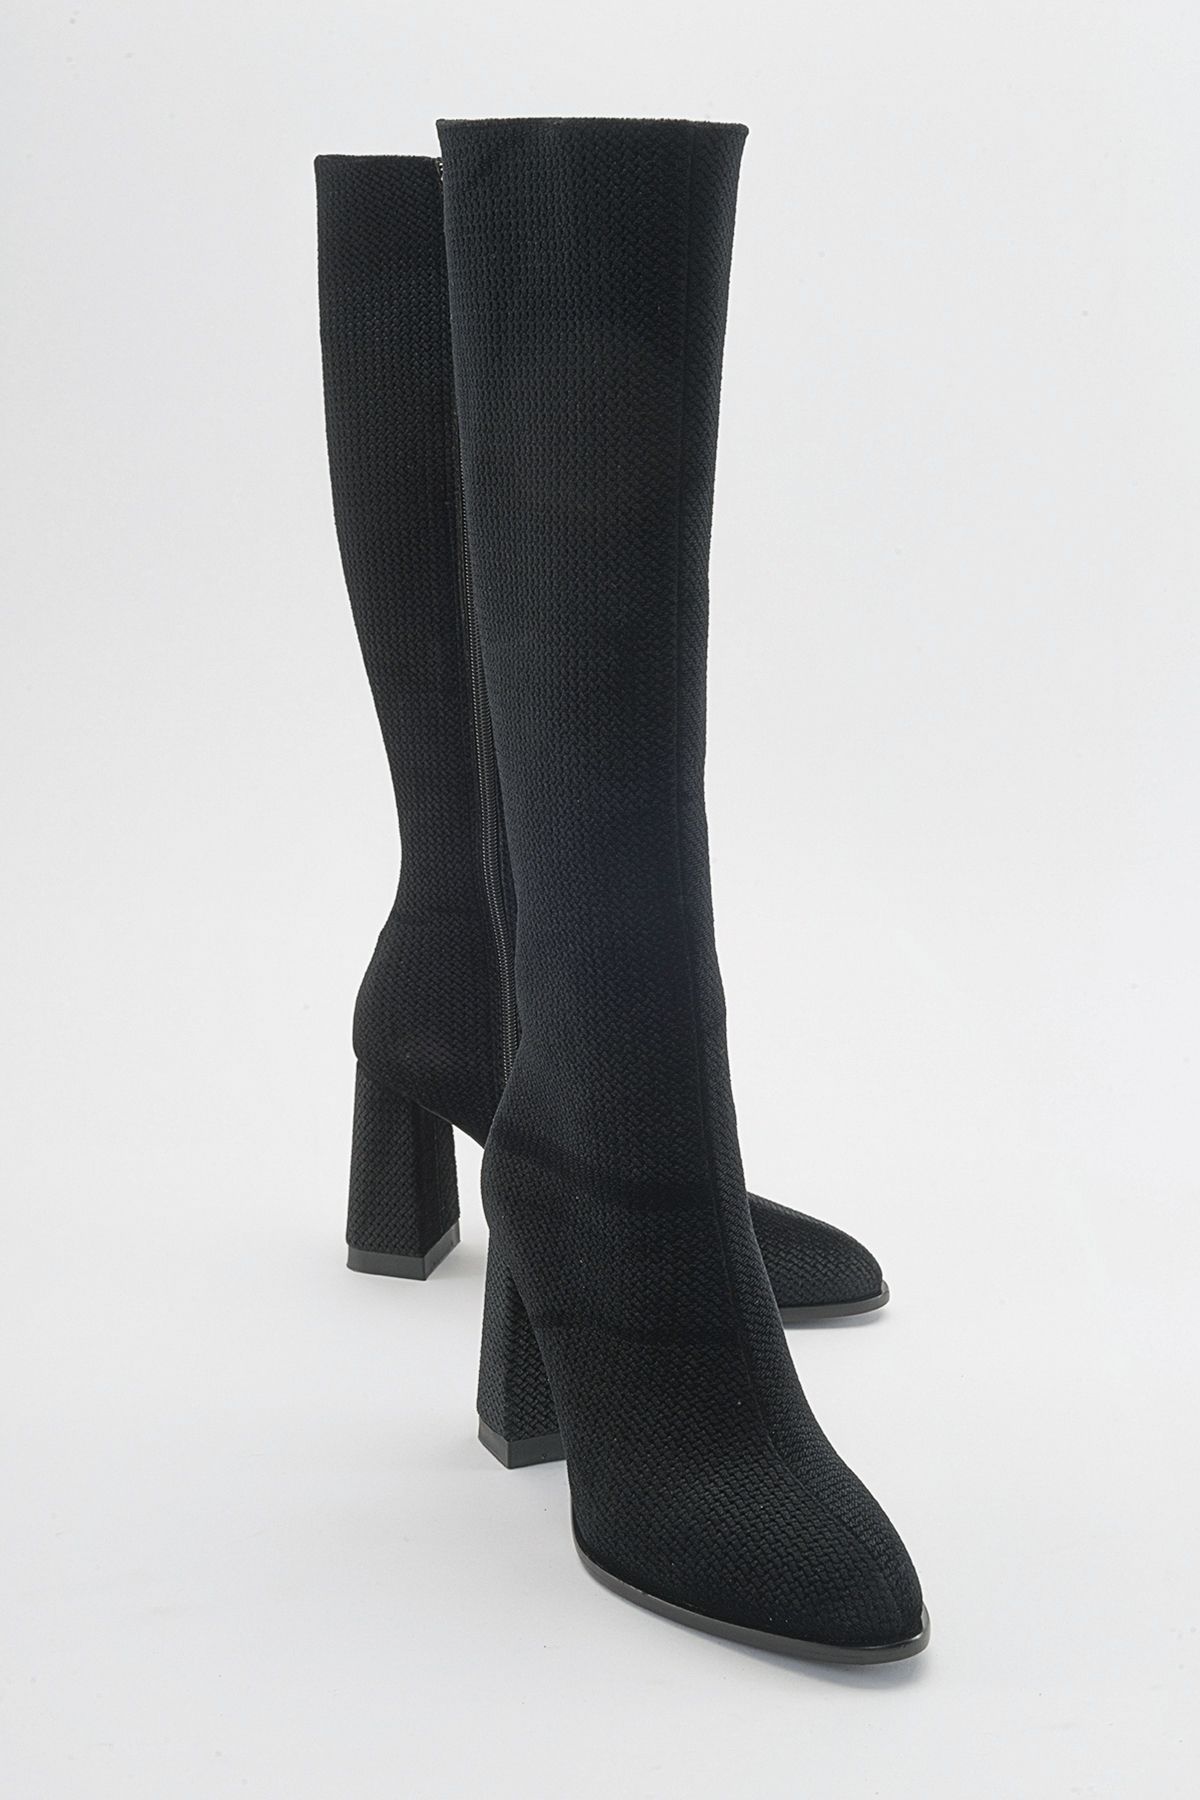 luvishoes DECER Siyah Desenli Kadın Topuklu Çizme